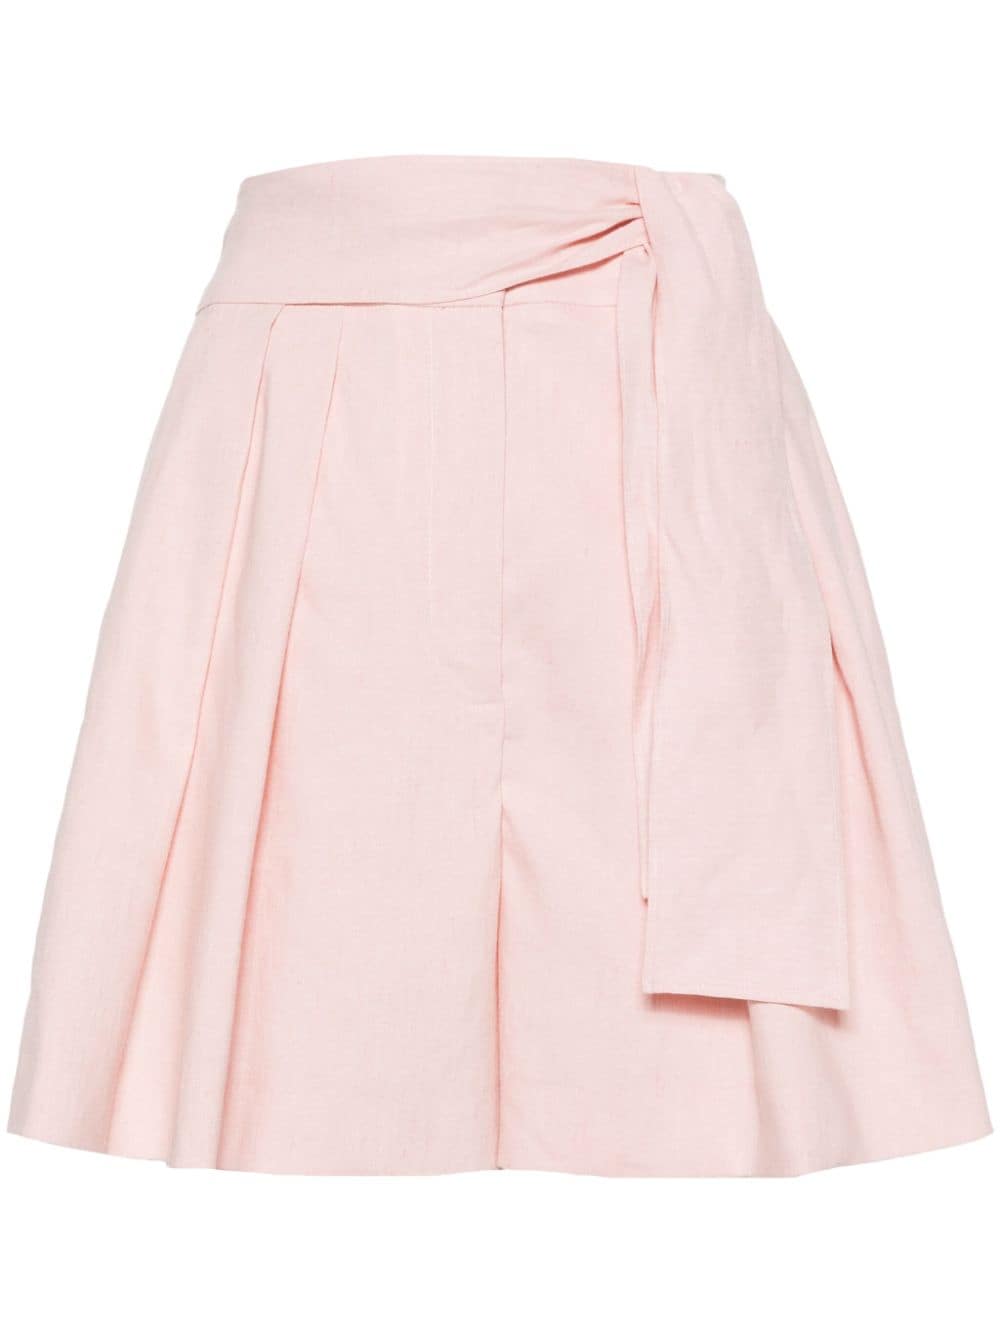 Claudie Pierlot pleat high-waisted shorts - Pink von Claudie Pierlot